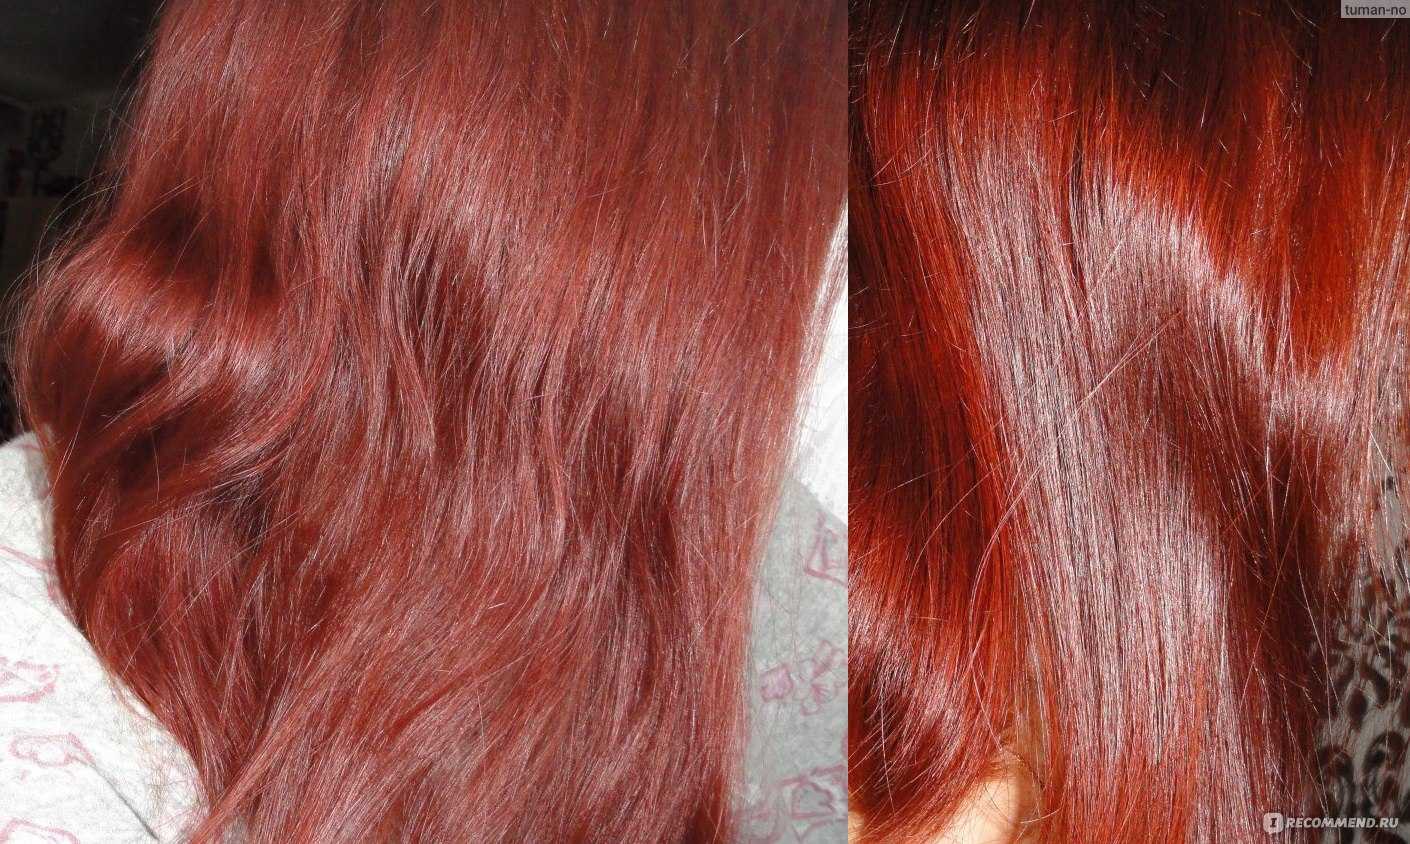 Как выбрать хну и правильно покрасить волосы, чтобы не было разочарований